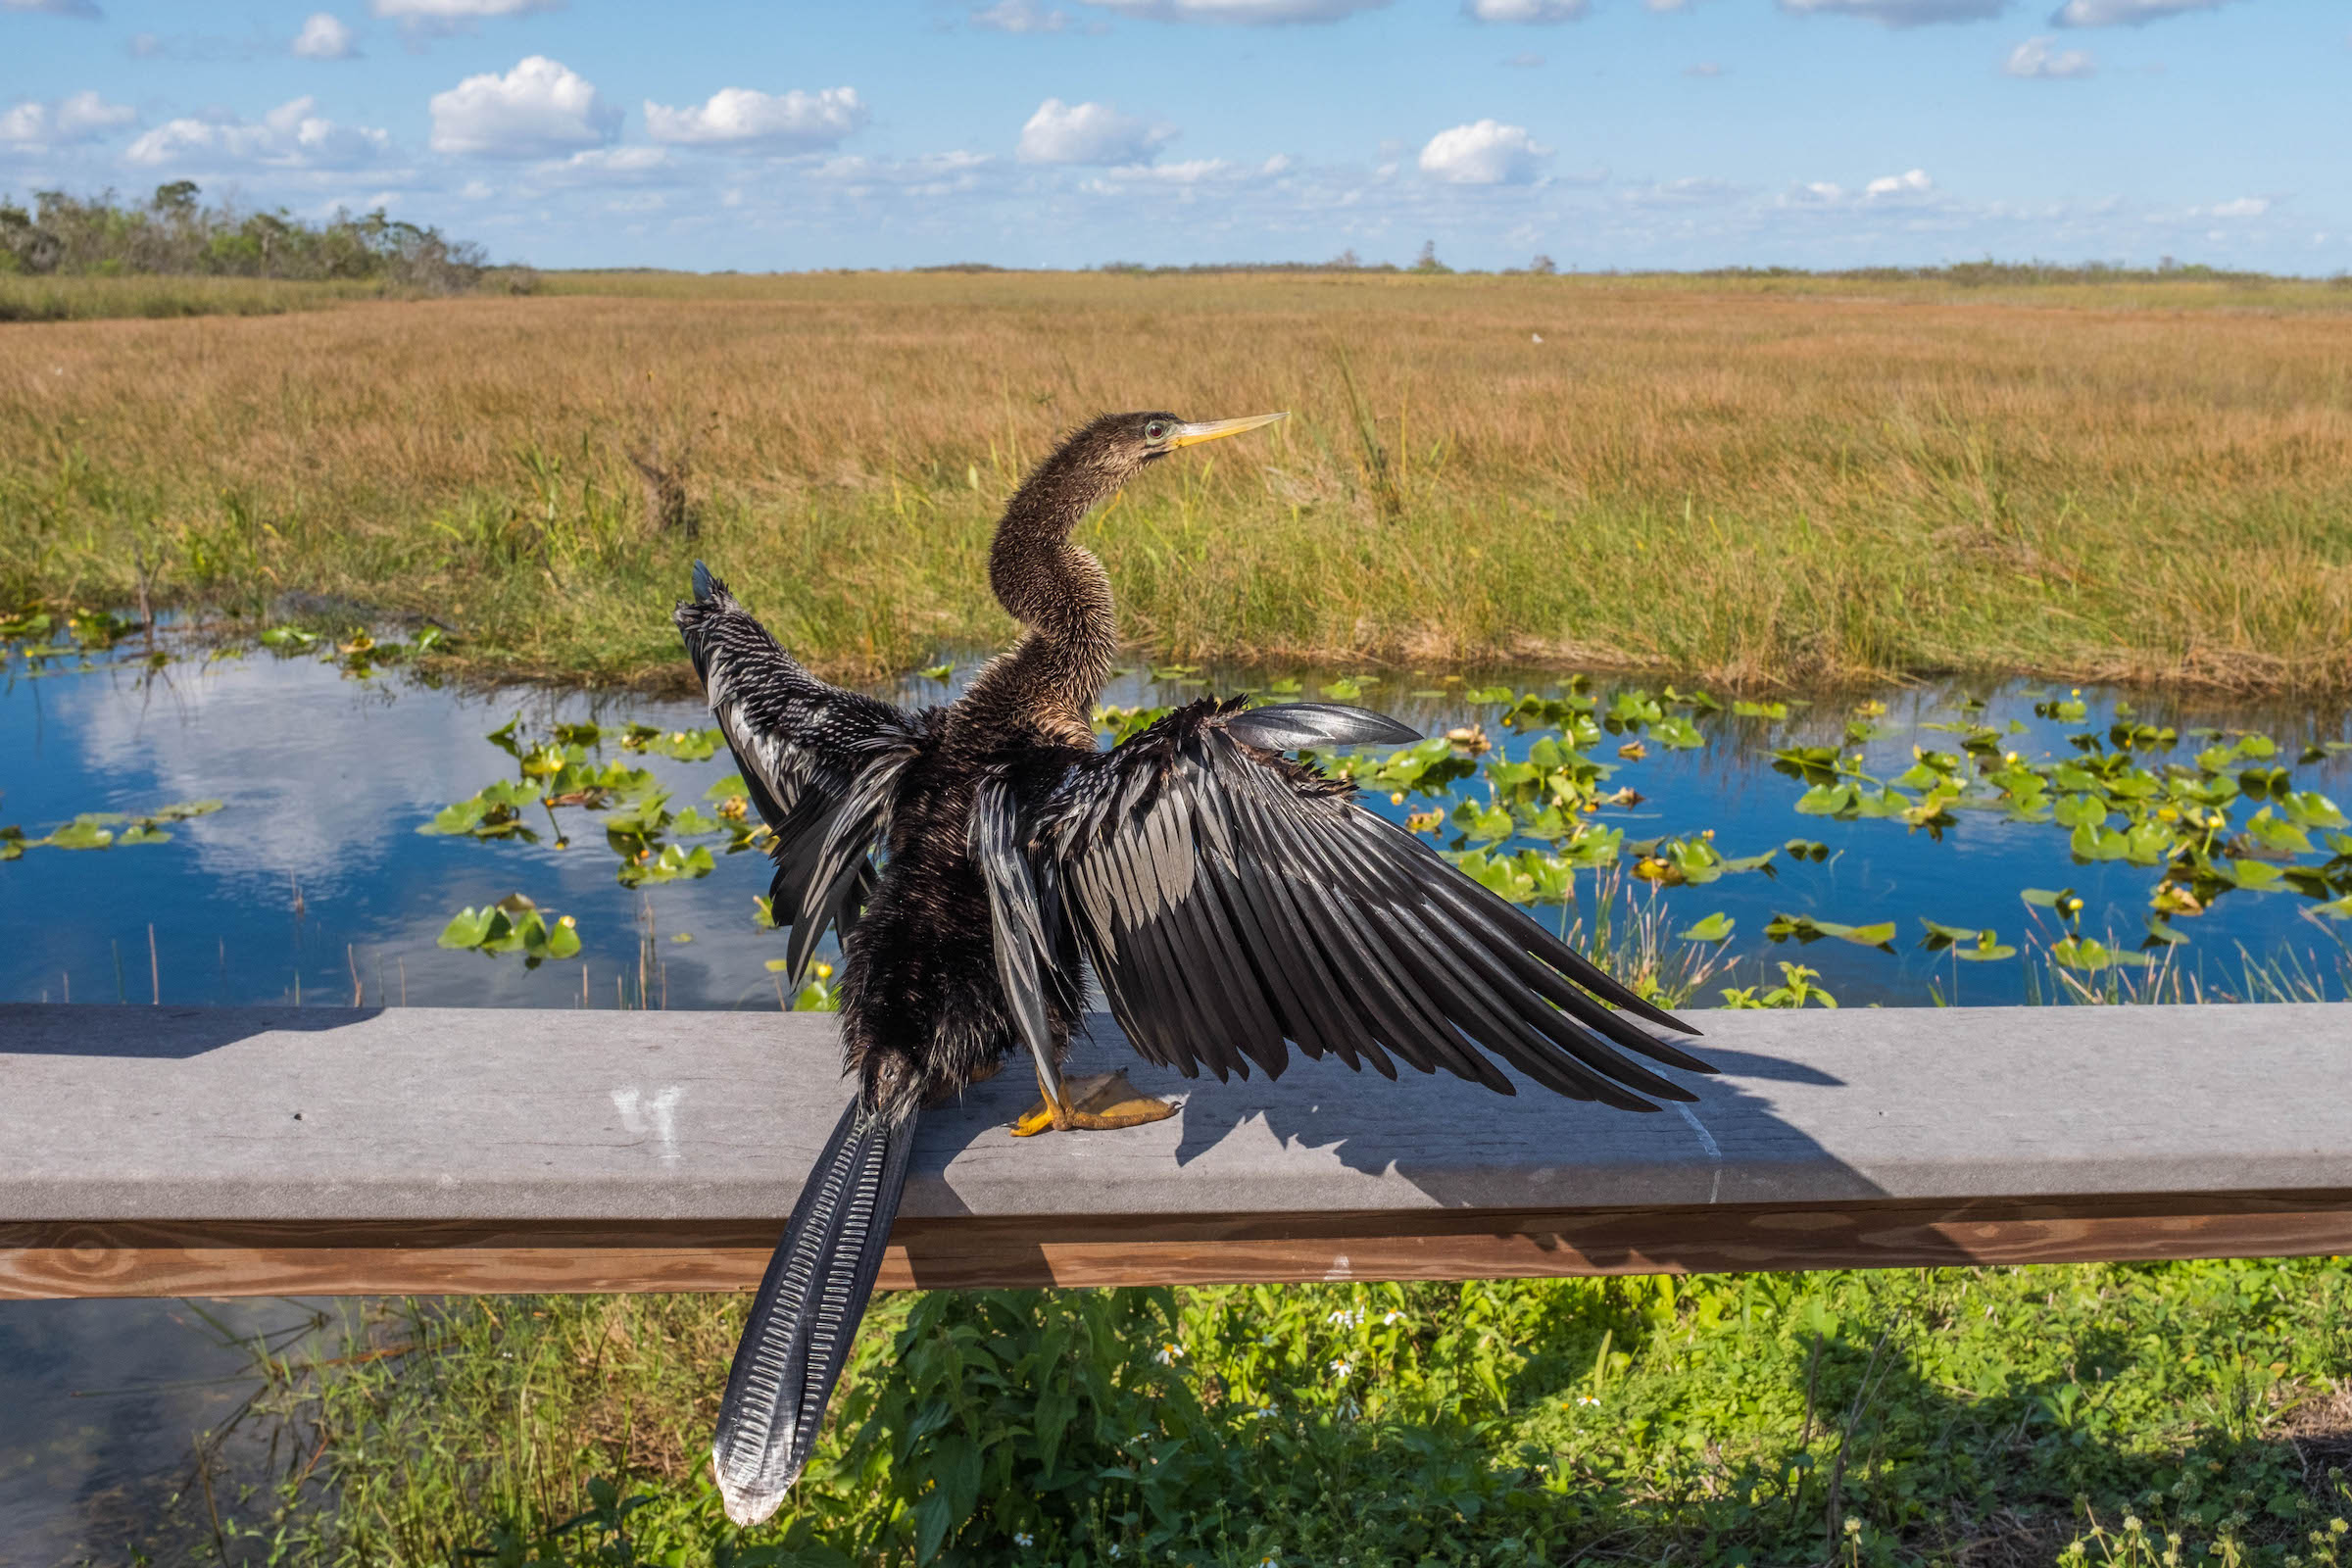 Parc National des Everglades